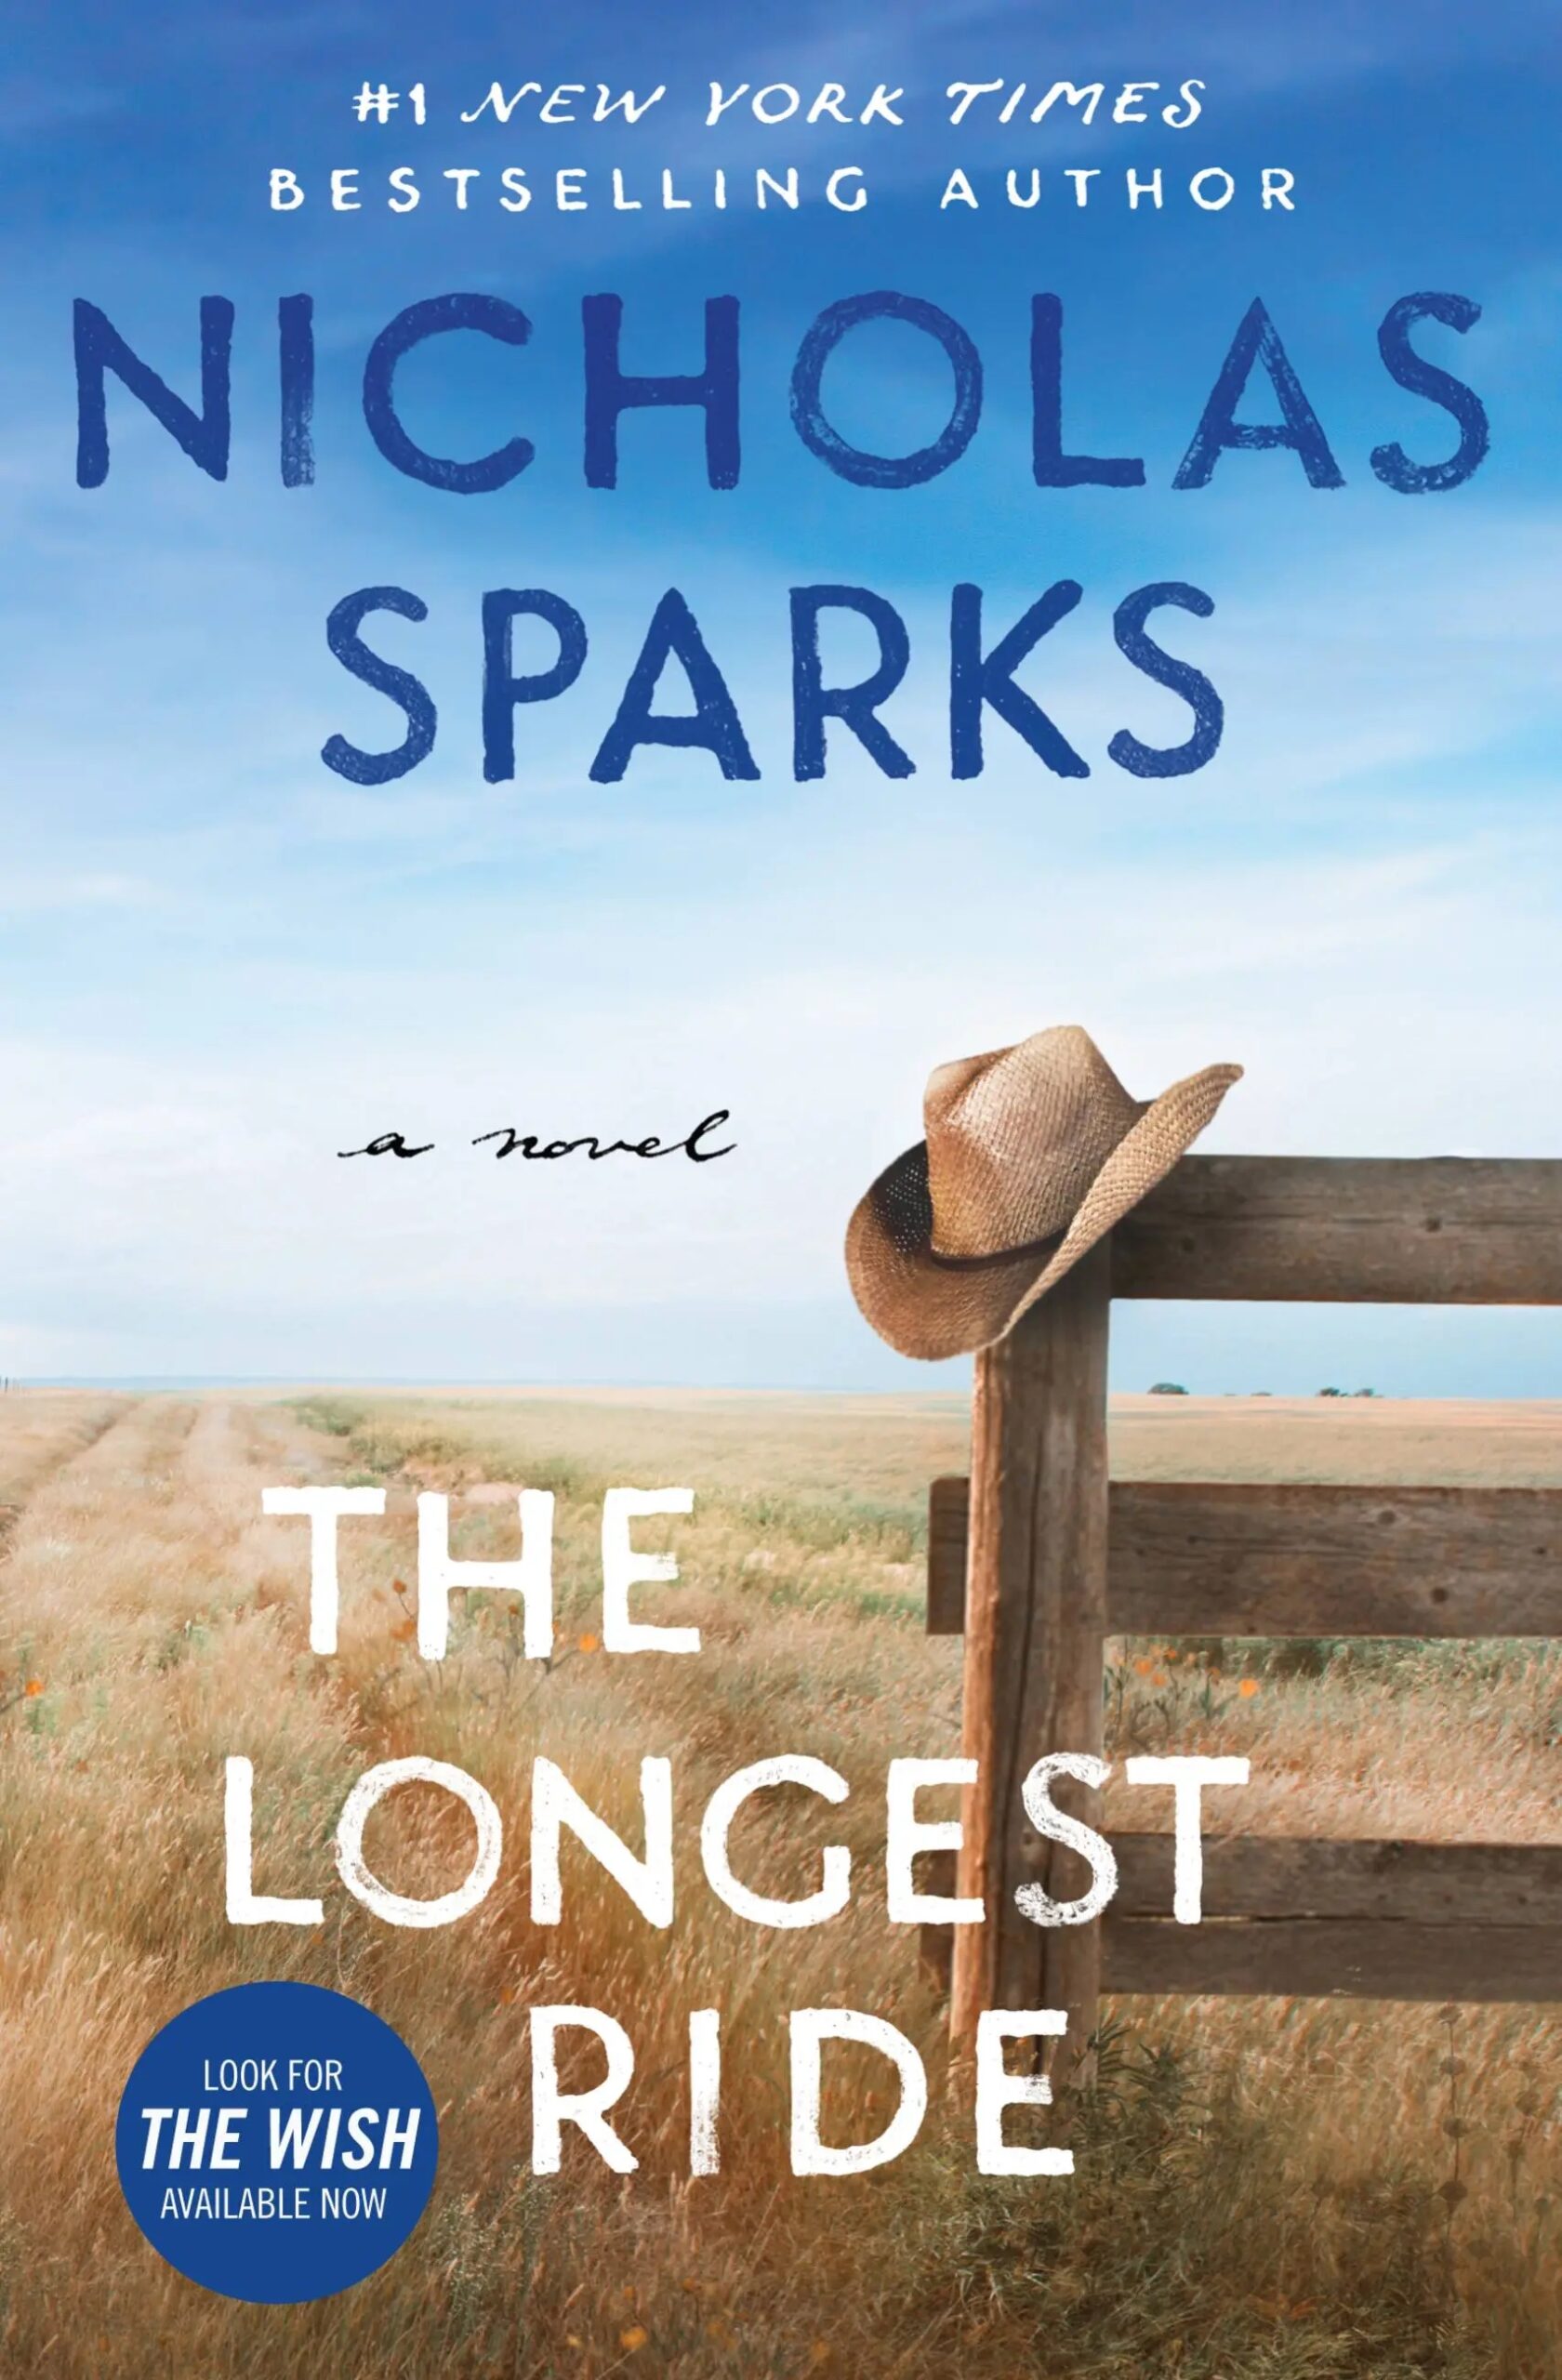 Nicholas Sparks The Longest Ride